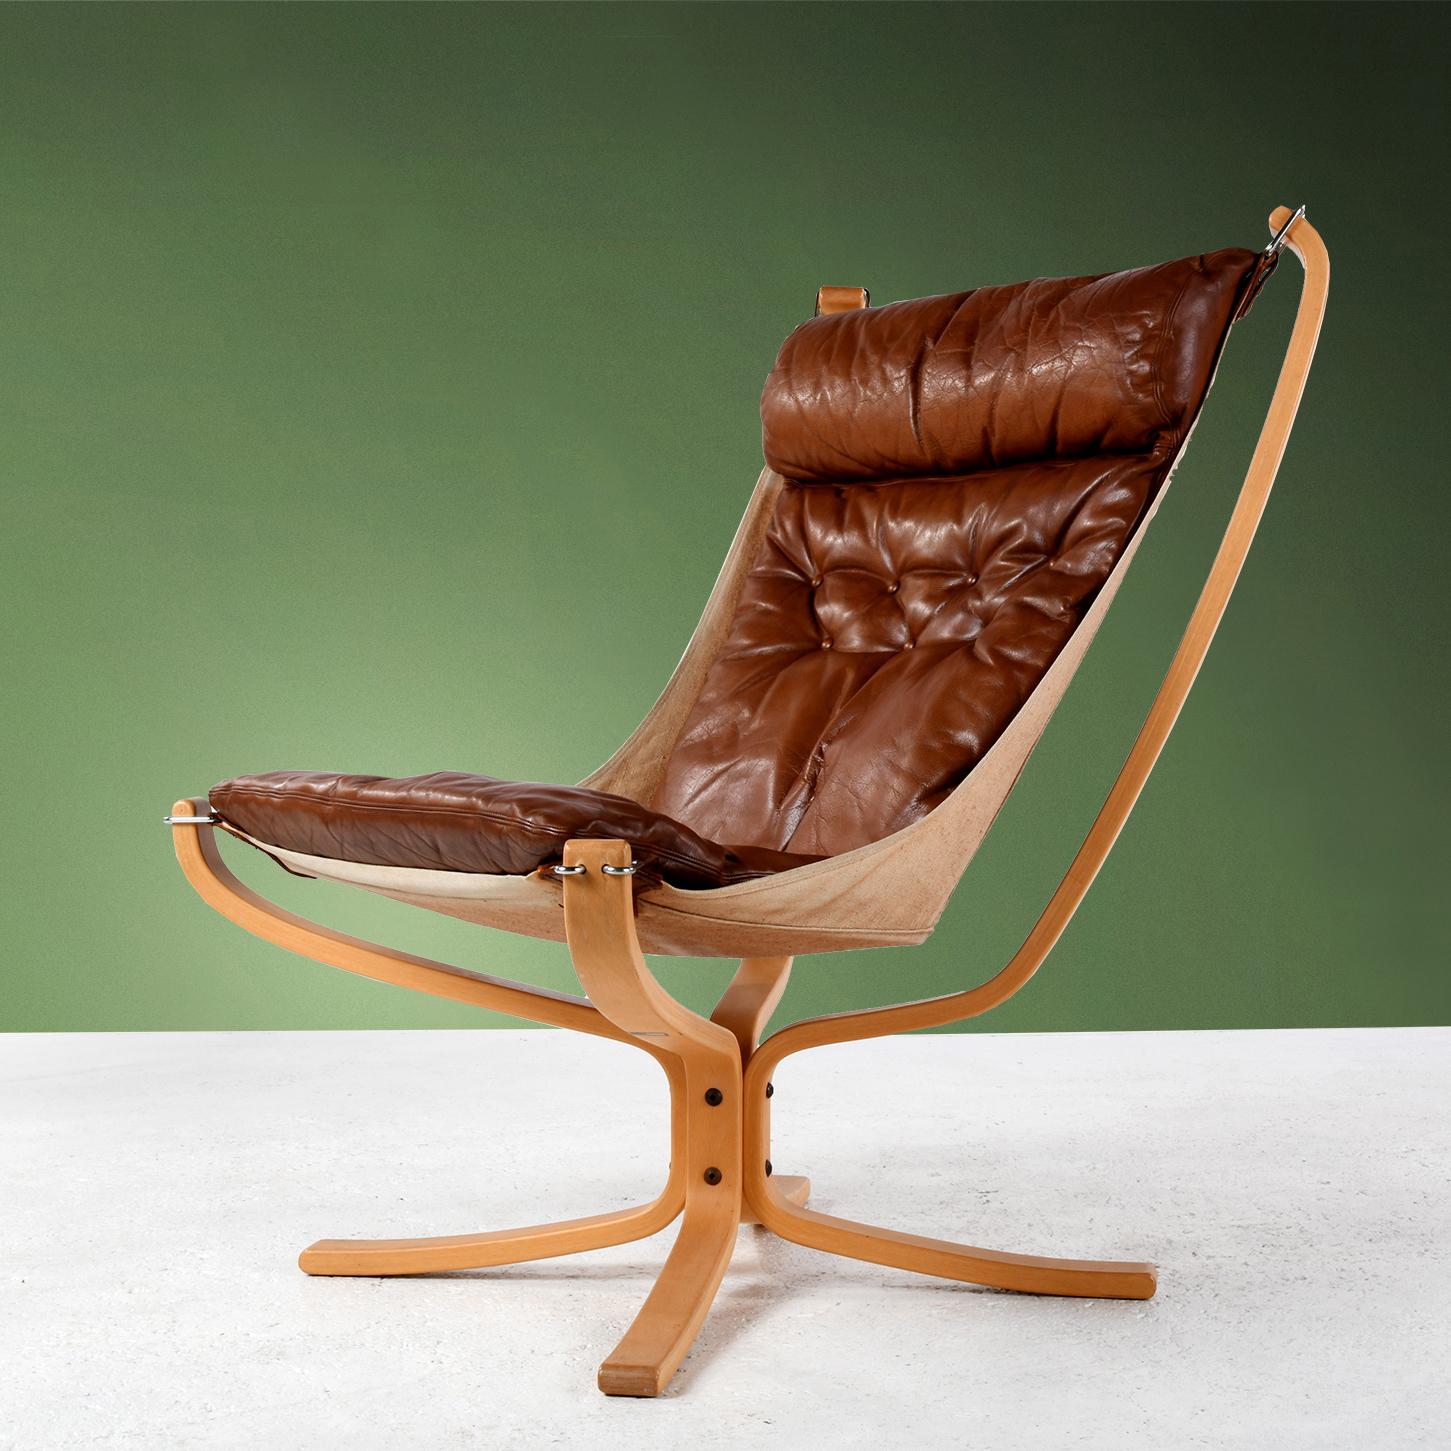 Chaise Falcon conçue par le designer norvégien Sigurd Ressell (1920-2010) et produite par le fabricant norvégien Vatne en 1970. Tel un hamac suspendu, la chaise est composée d'un tissu résistant relié à la base par 4 boucles en acier chromé